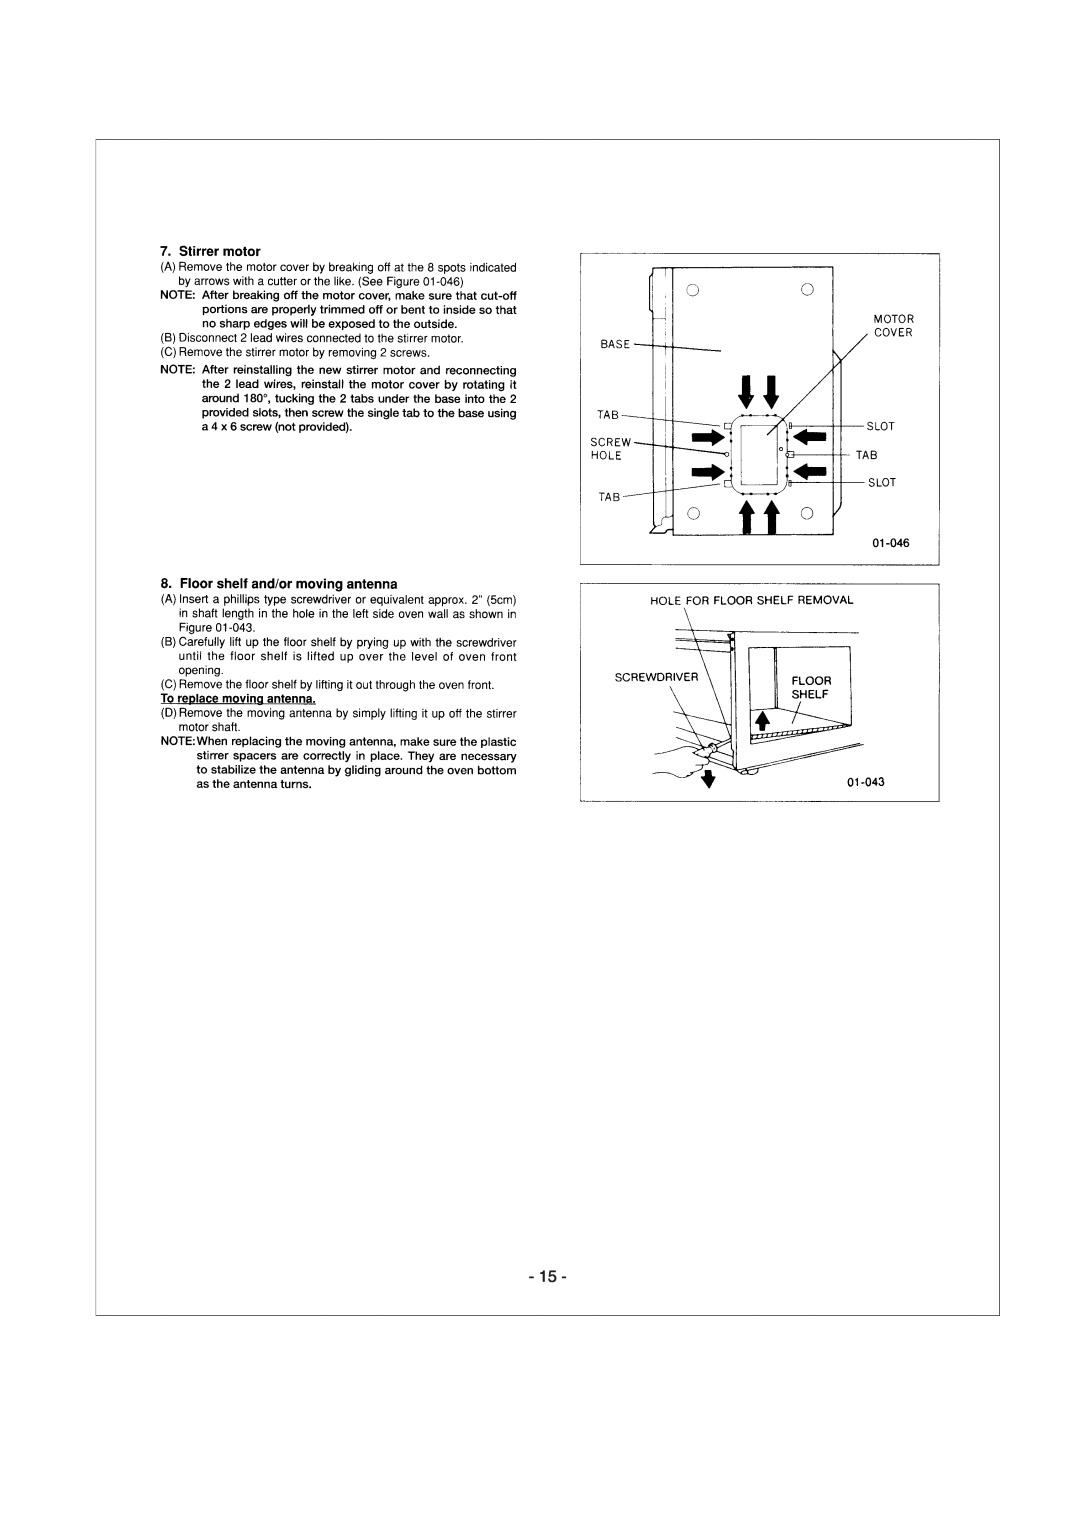 Panasonic NE-1064TC, NE-1054TC, NE-1024TC manual 